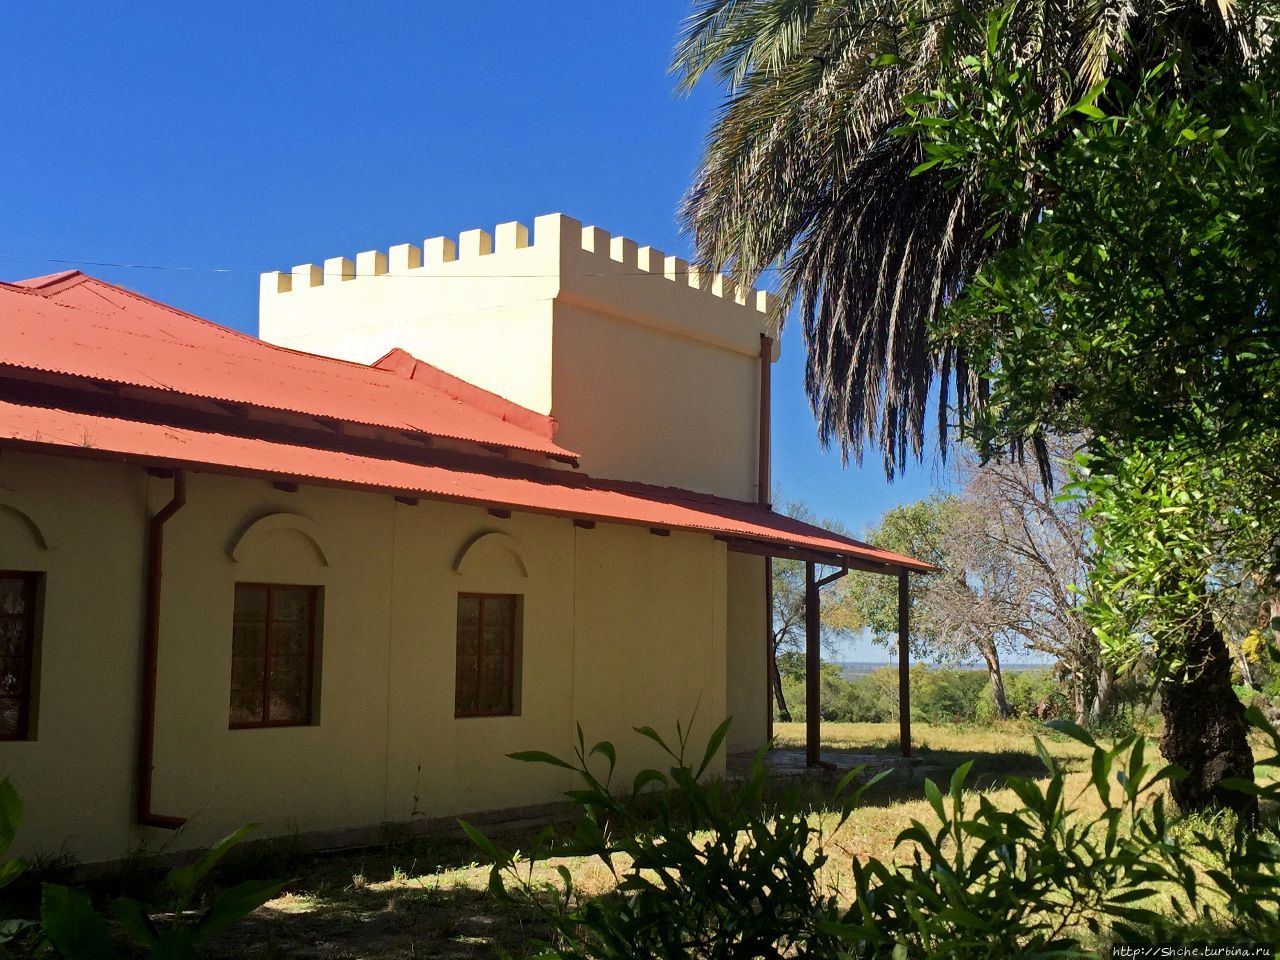 Алтес форт, или Музей Старого Форта Грутфонтейн, Намибия